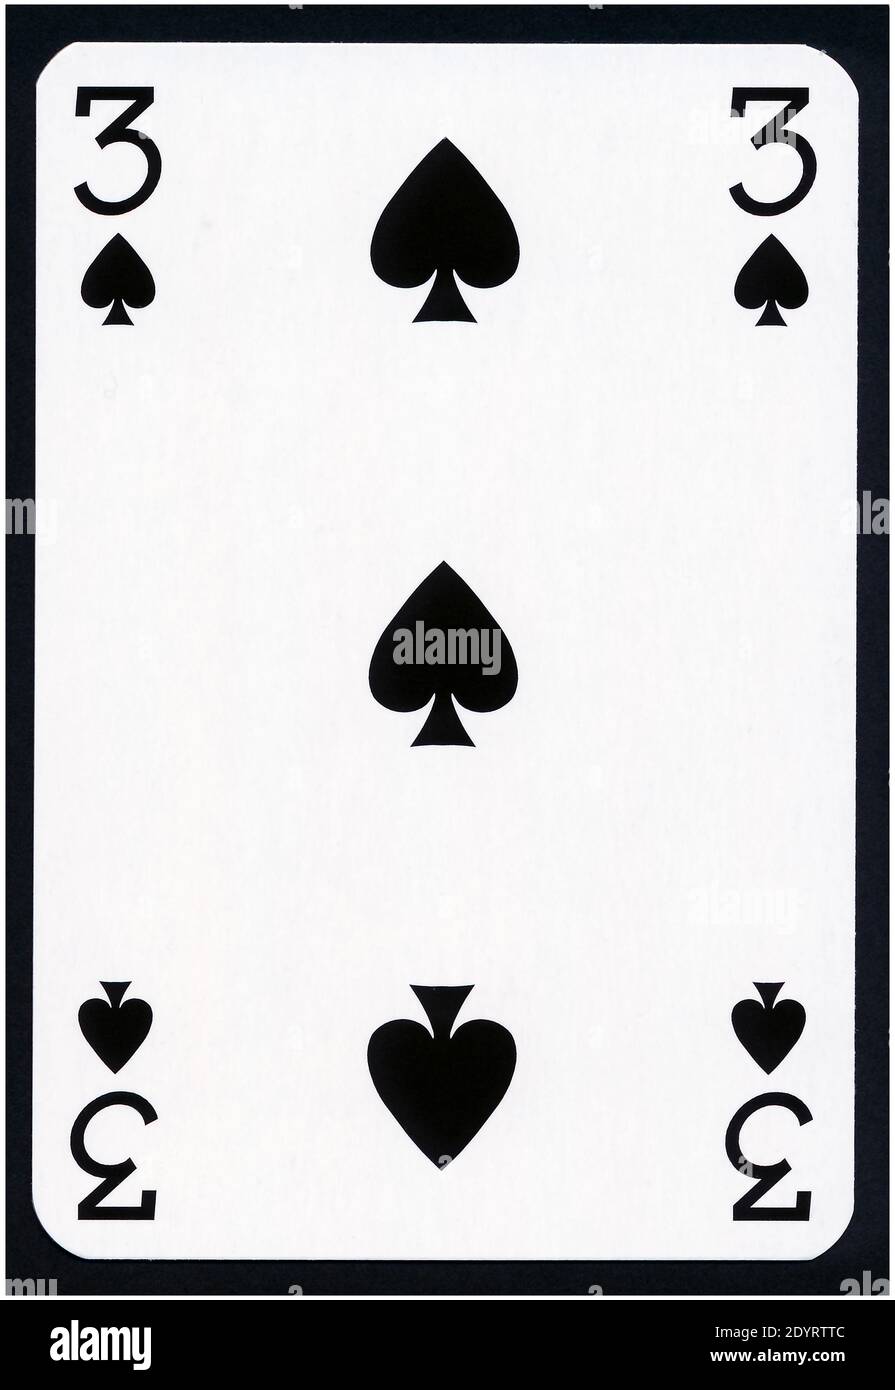 Cartes à jouer de Spades suit isolé sur fond noir - XXL de haute qualité. Banque D'Images